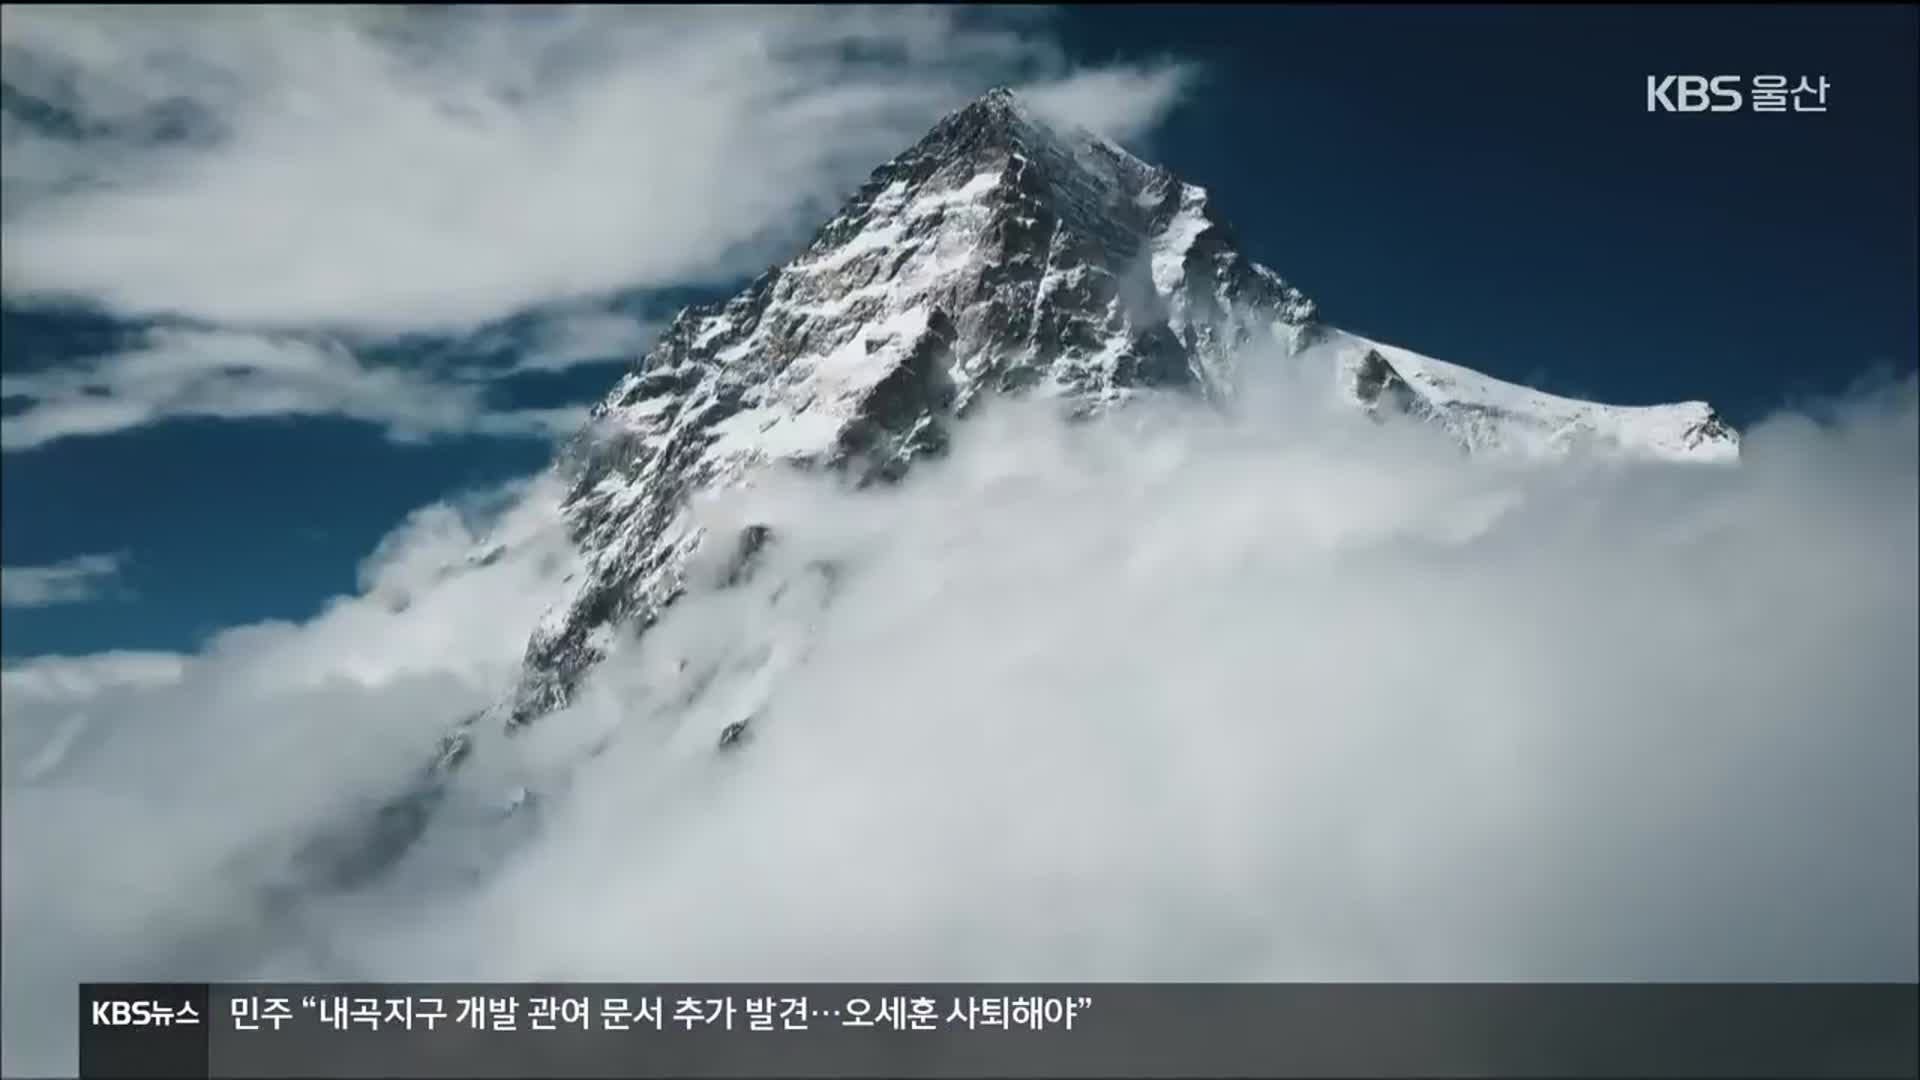 제6회 울주산악영화제 개막…“늘 푸른 산”